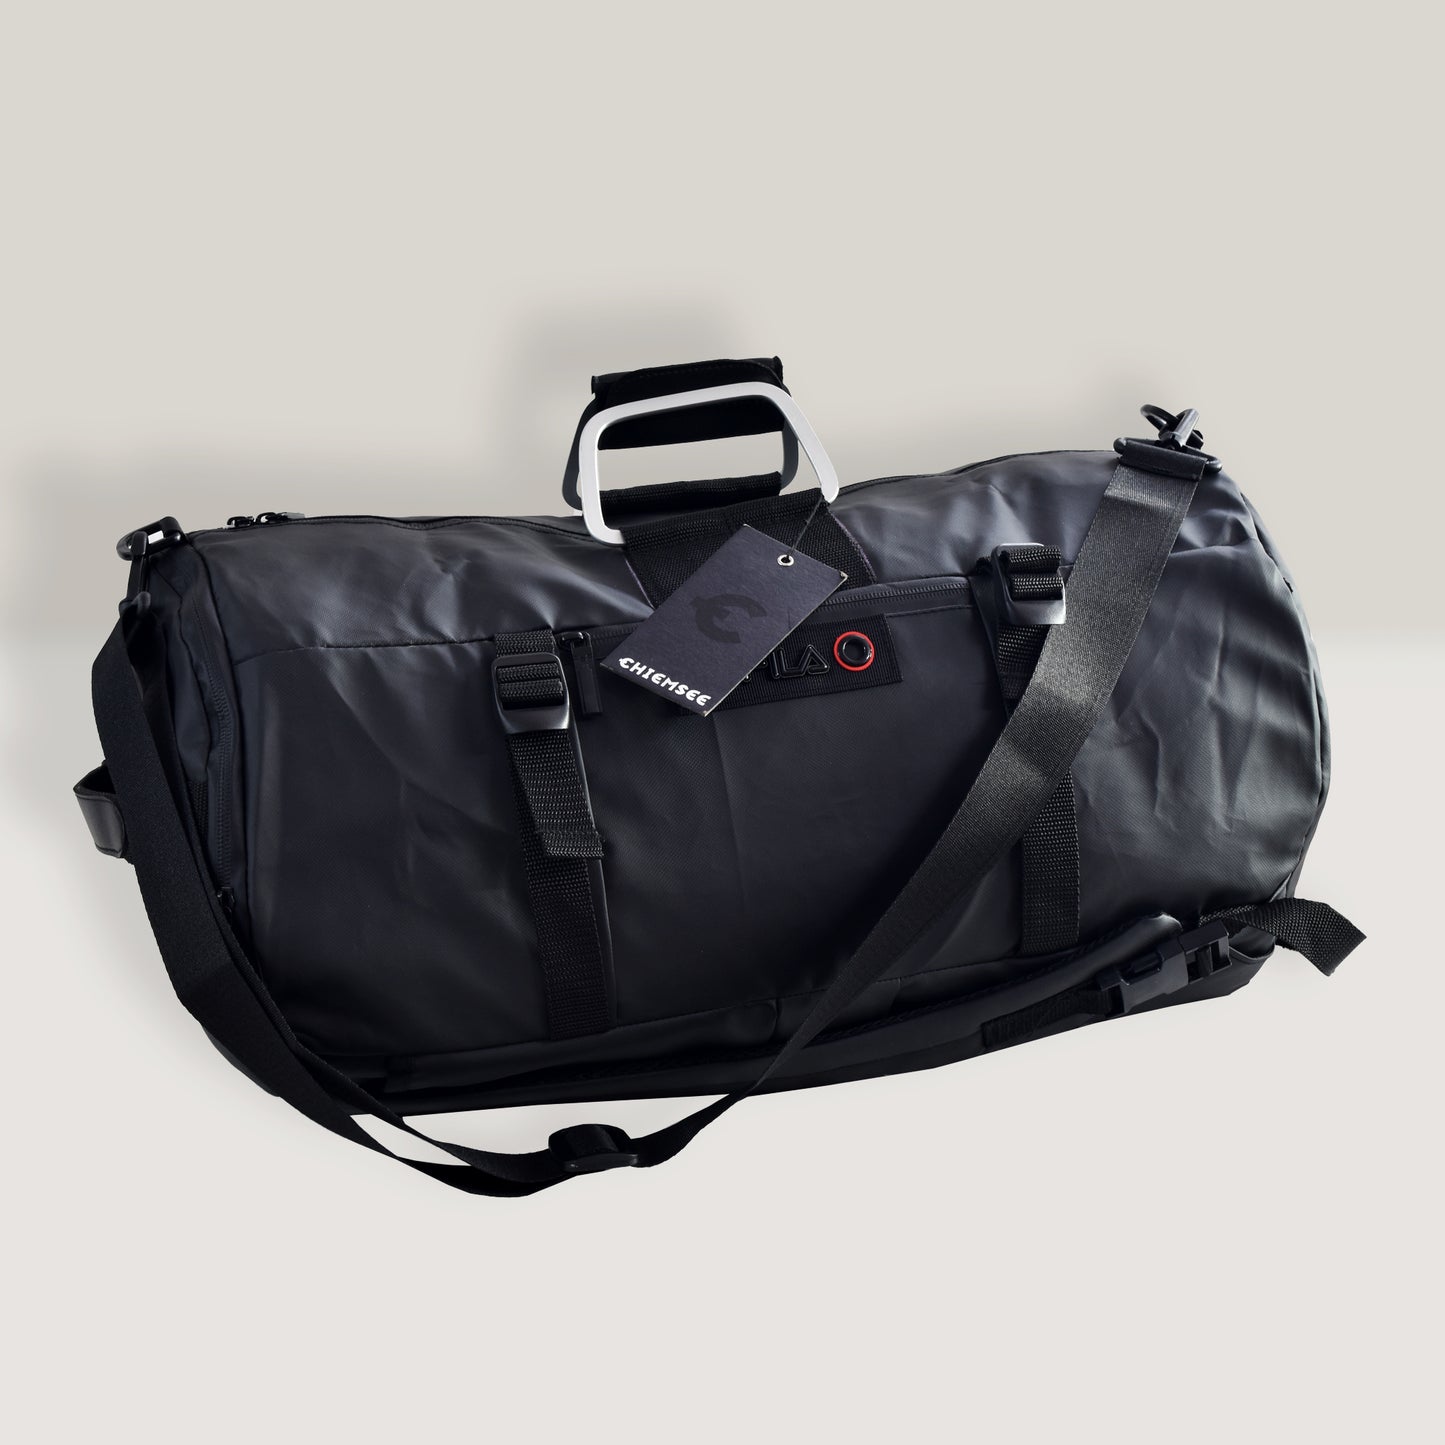 4in1 Bag Black | Travel Bag | Gym Bag | Waterproof